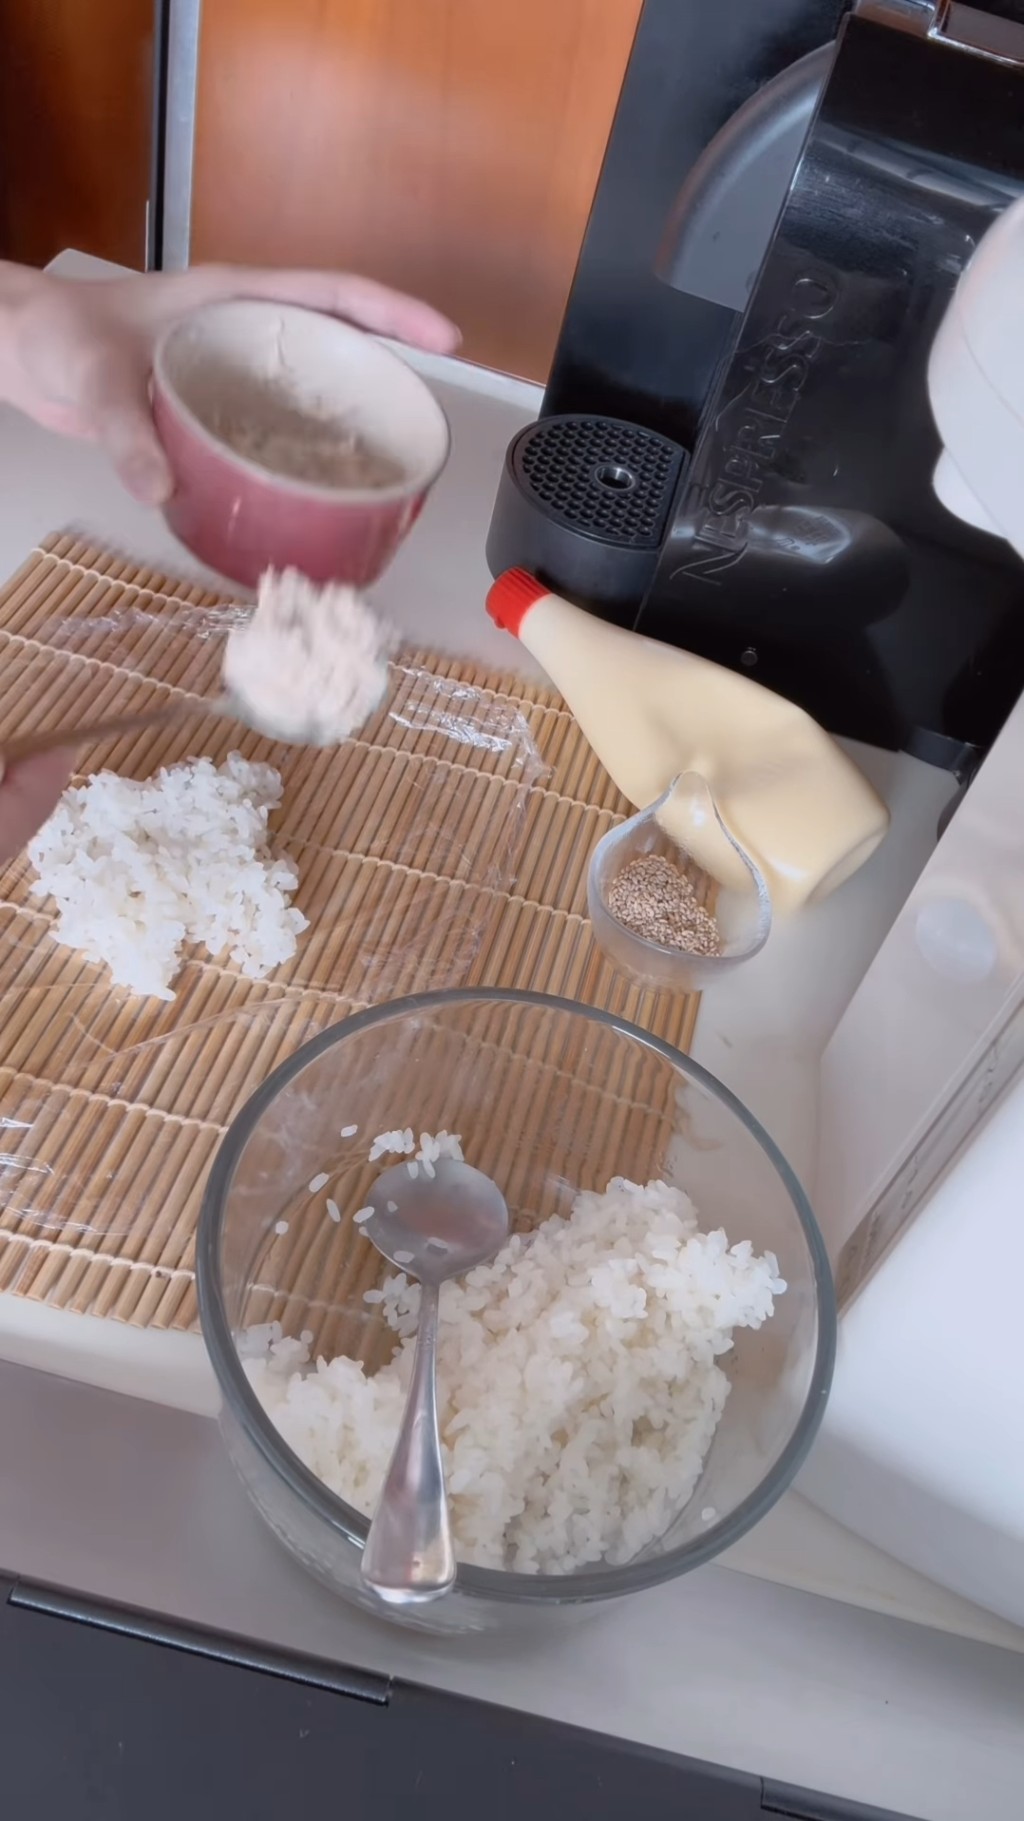 用一張保鮮紙先鋪在桌上，然後在保鮮紙上舀上適量的珍珠米飯，把珍珠米飯鋪平後加入已撈好的吞拿魚醬。